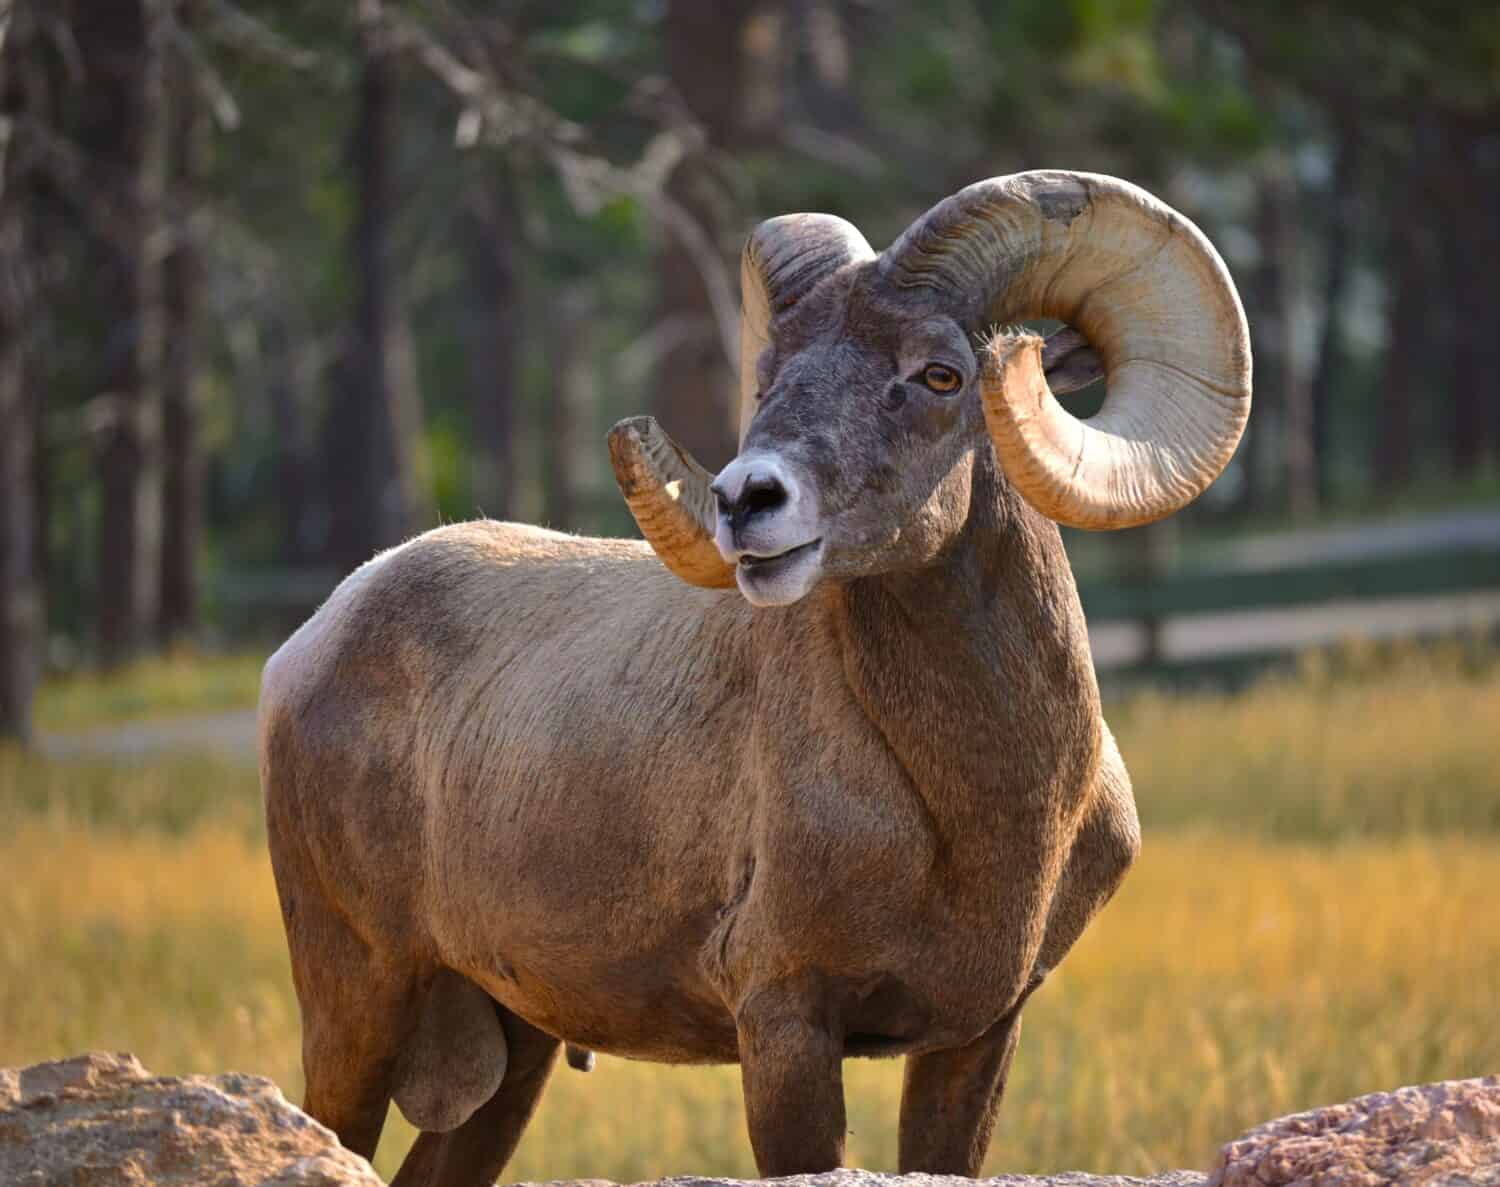 Icone resilienti della natura: celebrare la magnificenza e la sopravvivenza delle pecore bighorn nei paesaggi aspri.